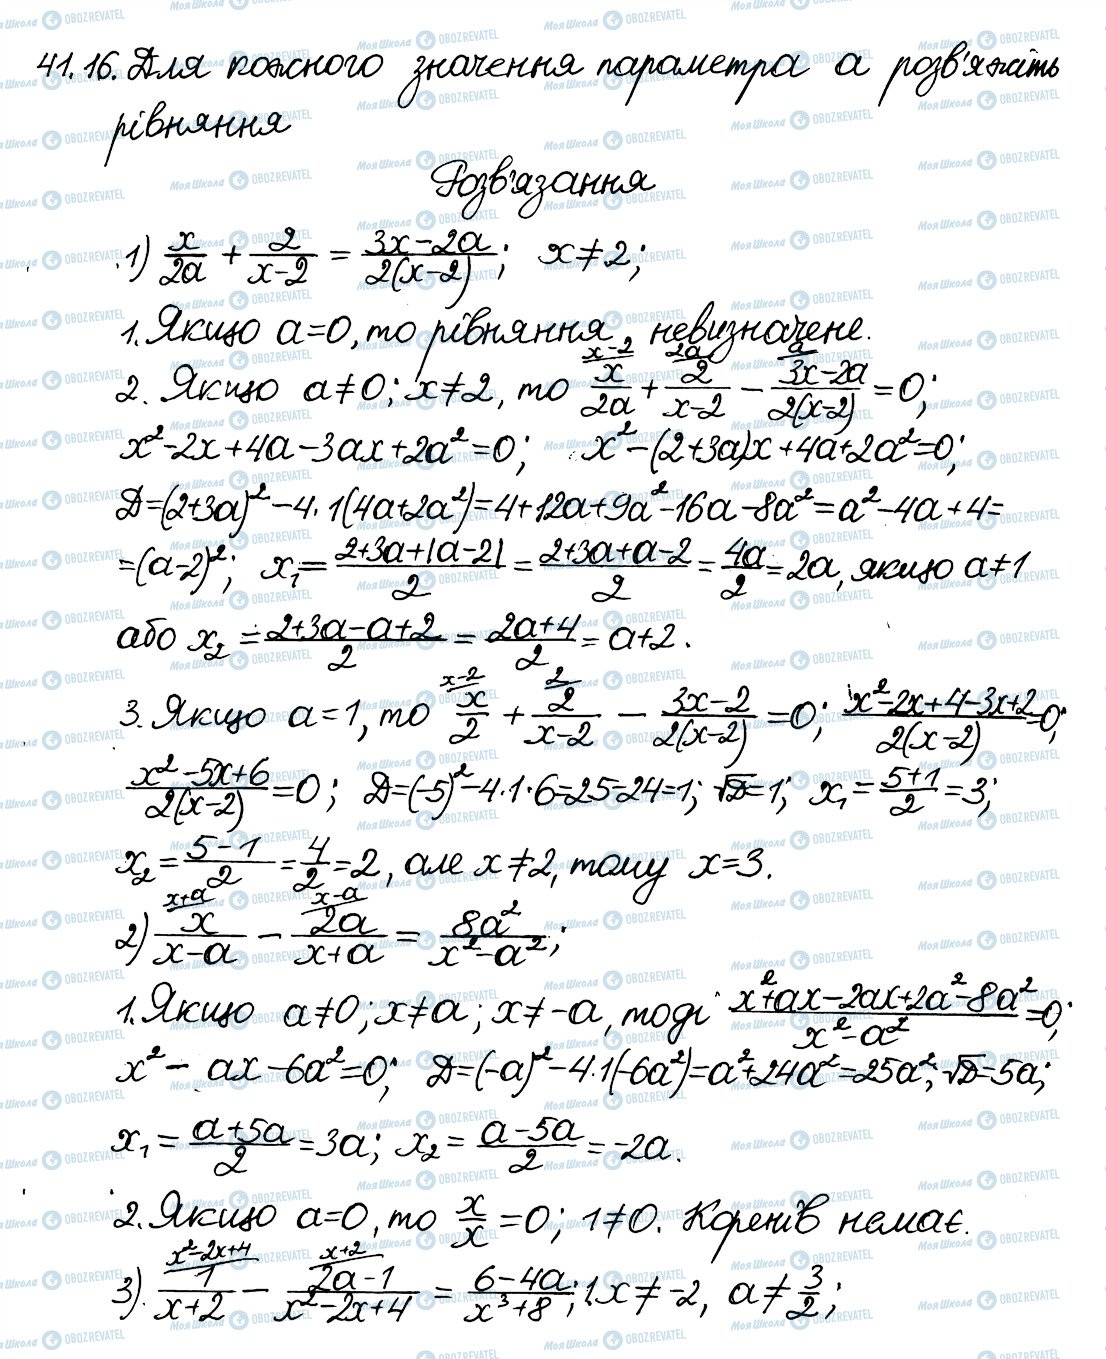 ГДЗ Алгебра 8 класс страница 16